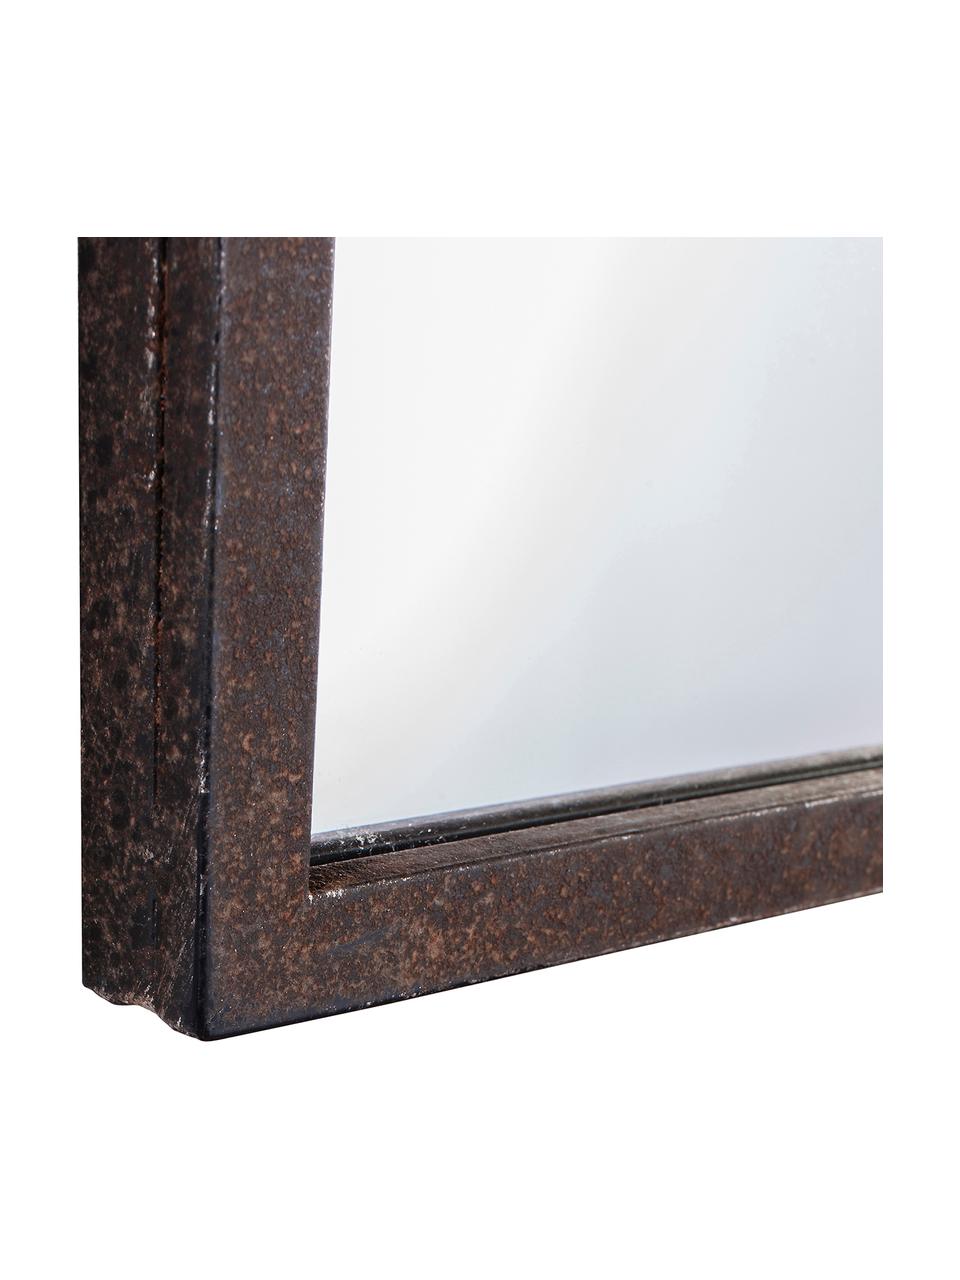 Wandspiegel Rockford mit braunem Metallrahmen, Rahmen: Metall, beschichtet, Spiegelfläche: Spiegelglas, Dunkelbraun, B 76 x H 91 cm